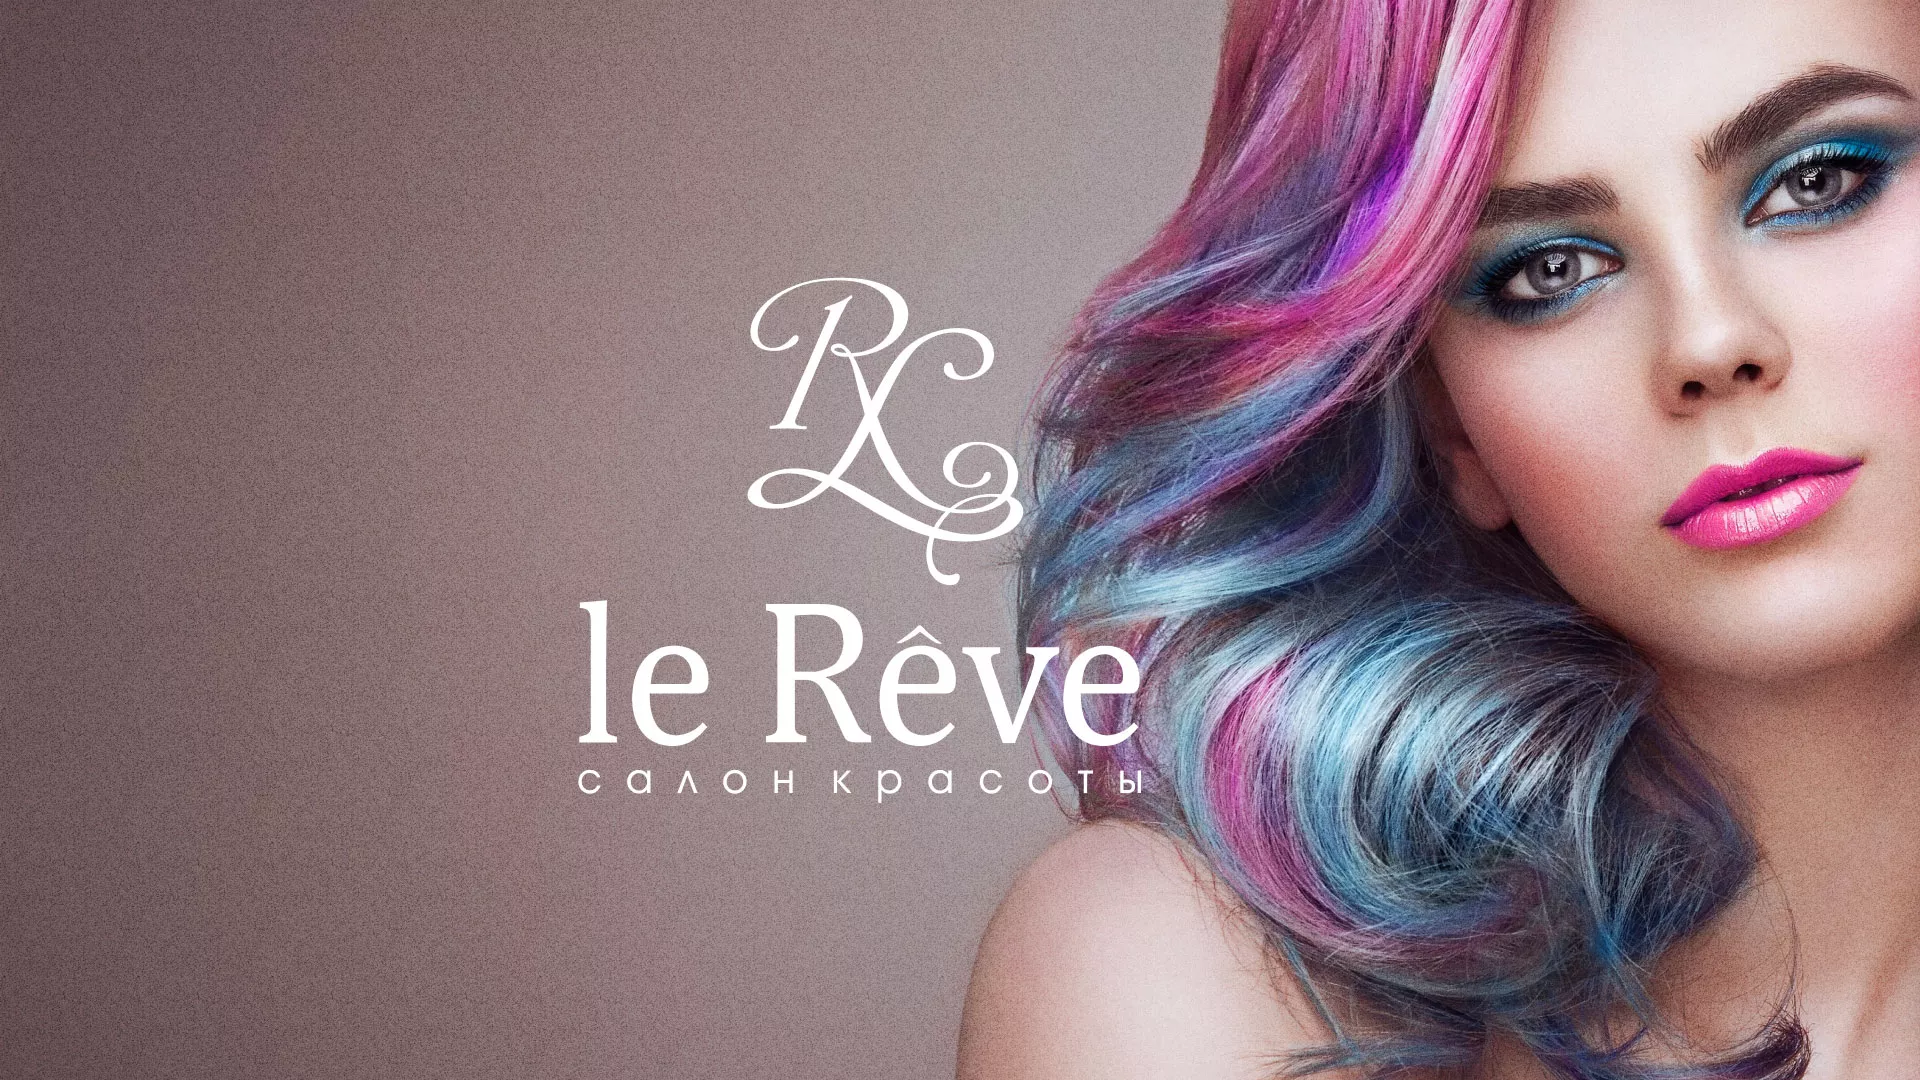 Создание сайта для салона красоты «Le Reve» в Перми